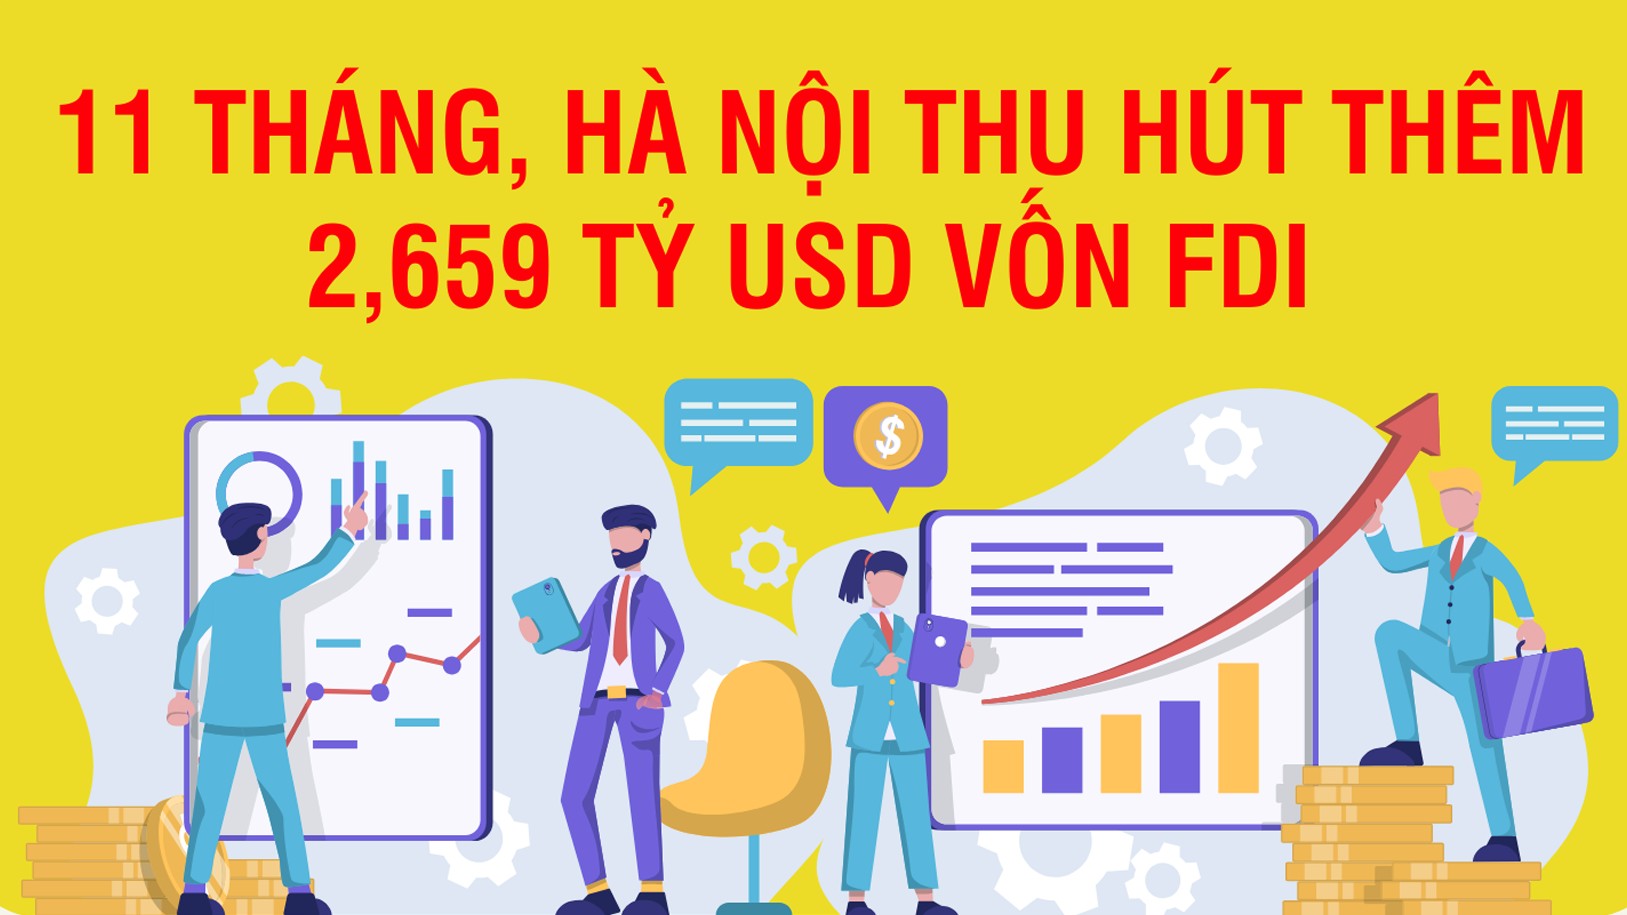 Hà Nội thu hút thêm 2,659 tỷ USD vốn FDI